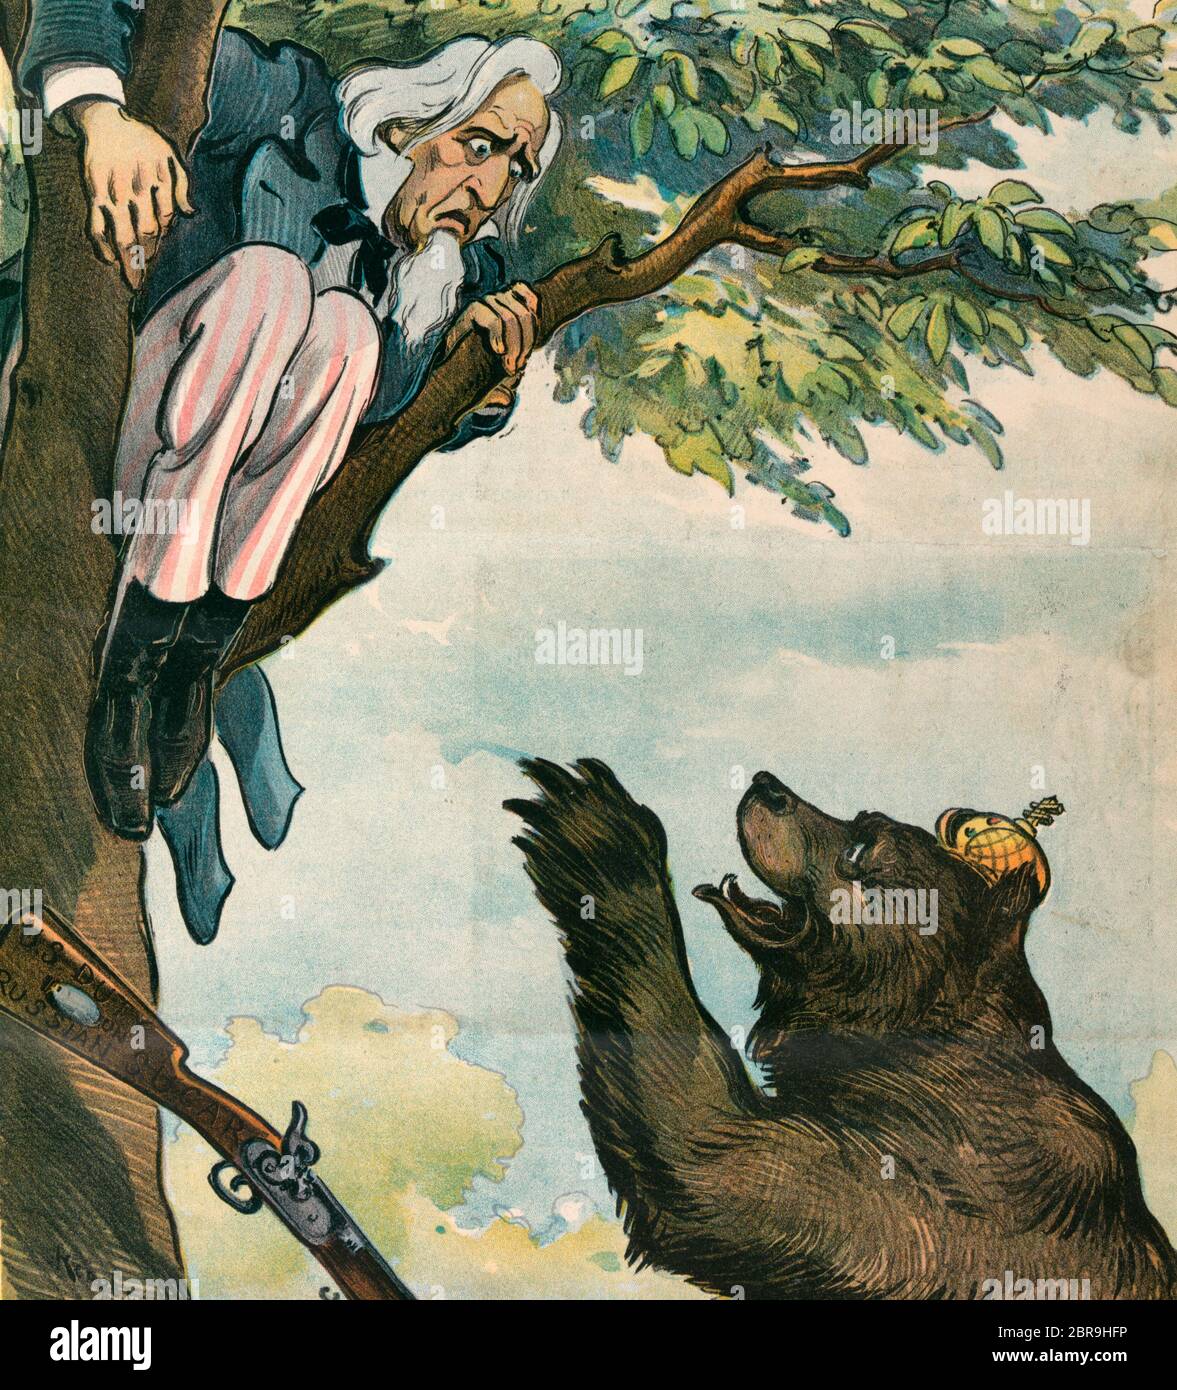 Come la guerra tariffaria deve finire - l'illustrazione mostra lo zio Sam in un albero, inseguito da l'orso russo che è in piedi alla base dell'albero; lo zio Sam ha lasciato cadere il suo fucile etichettato 'U.S. Dazio sullo zucchero russo.» Cartoon politico, 1901 Foto Stock